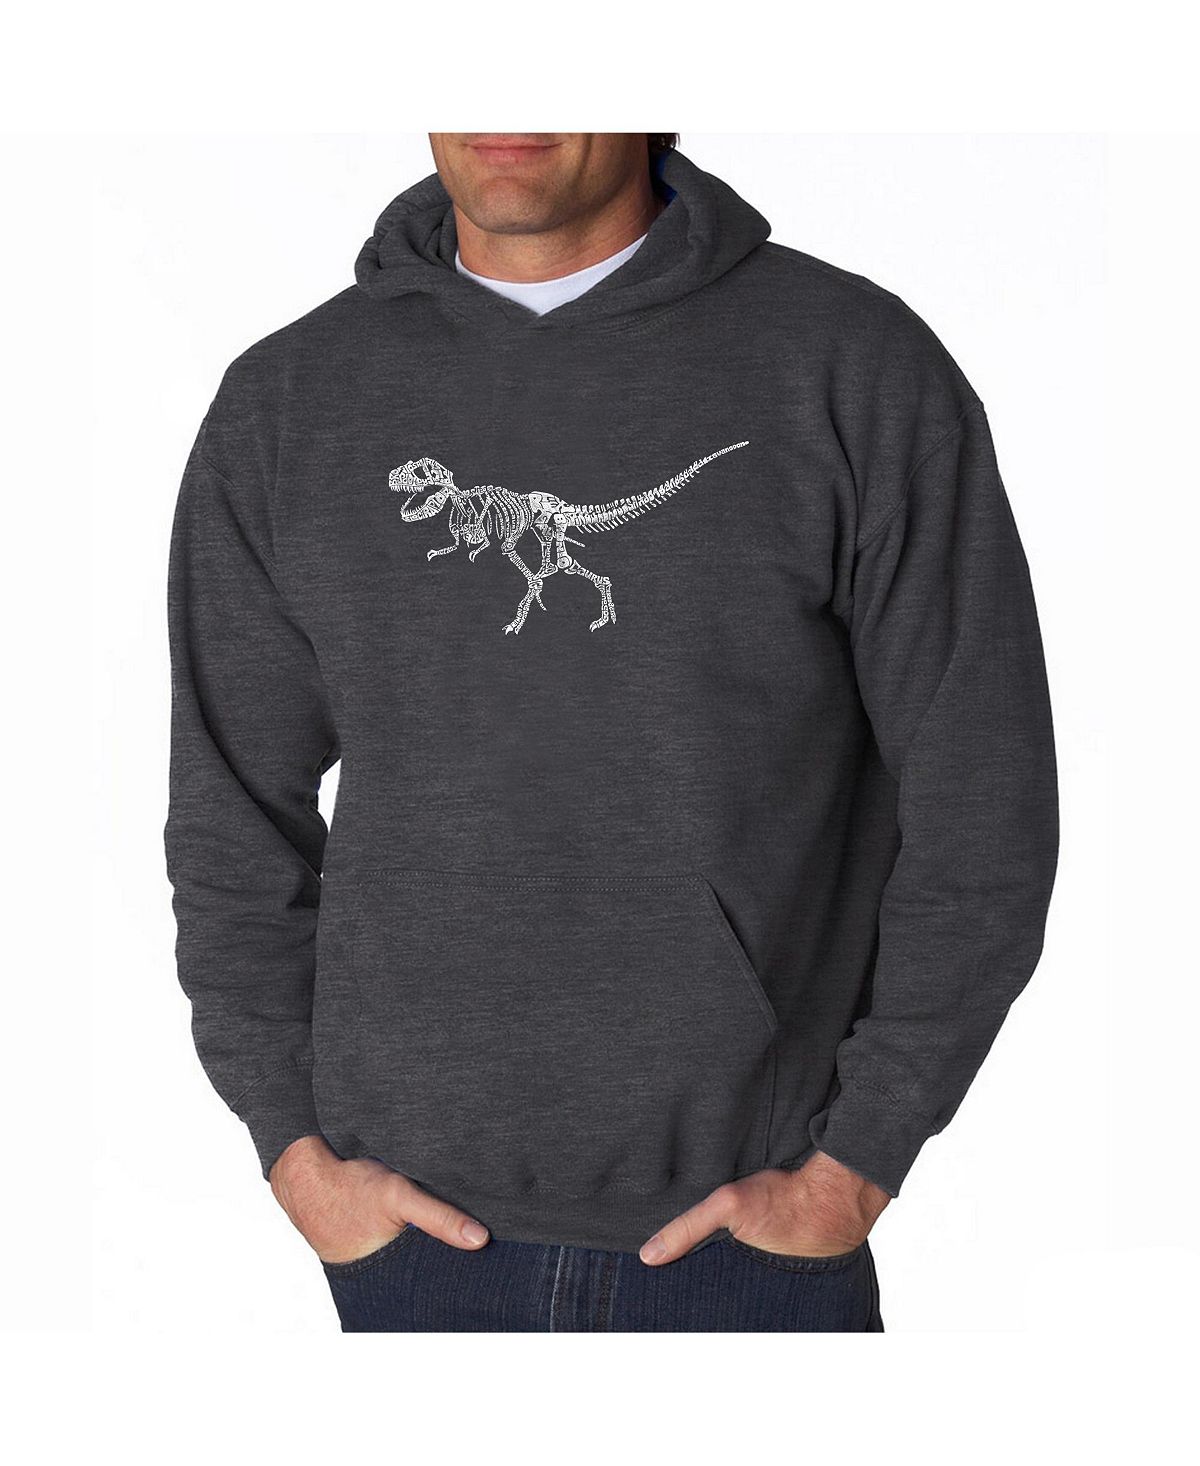 Мужская толстовка с капюшоном word art - скелет динозавра t-rex LA Pop Art, темно-серый